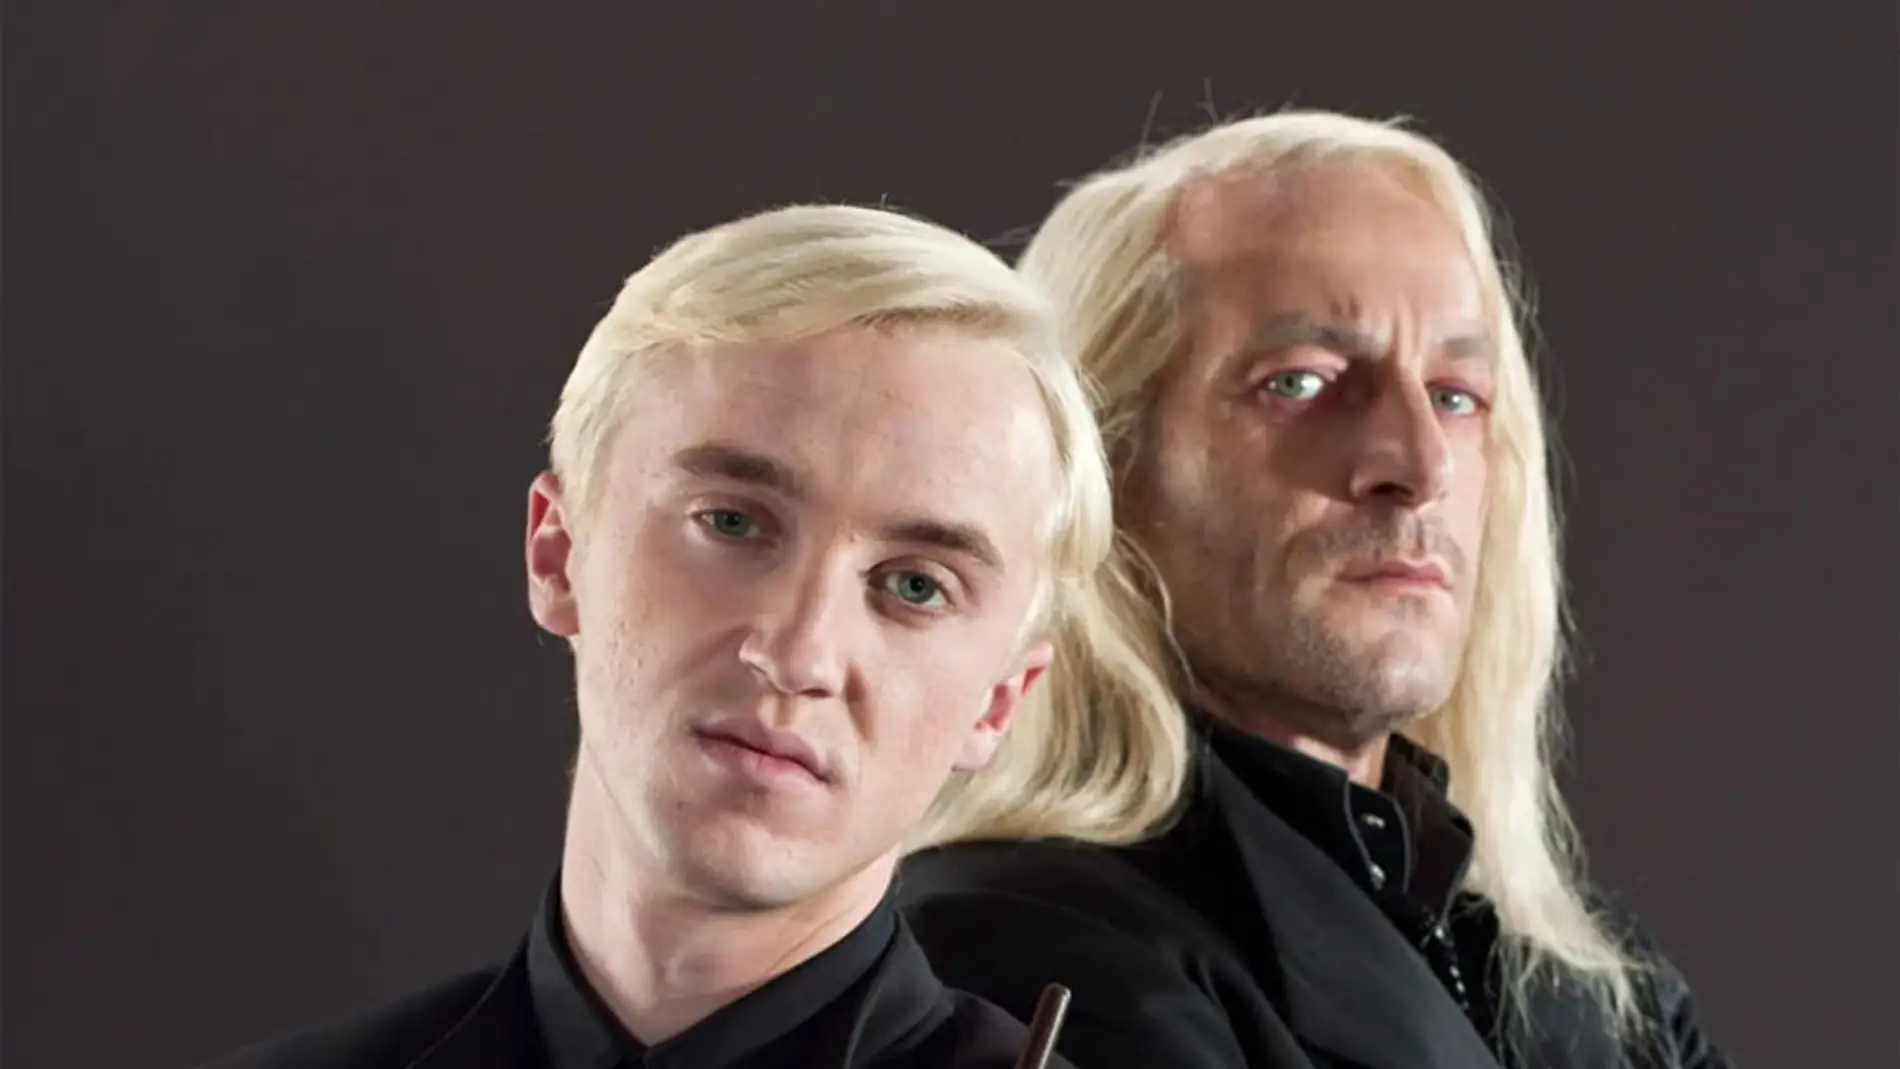 Tom Felton y Jason Isaacs como Draco y Lucius Malfoy